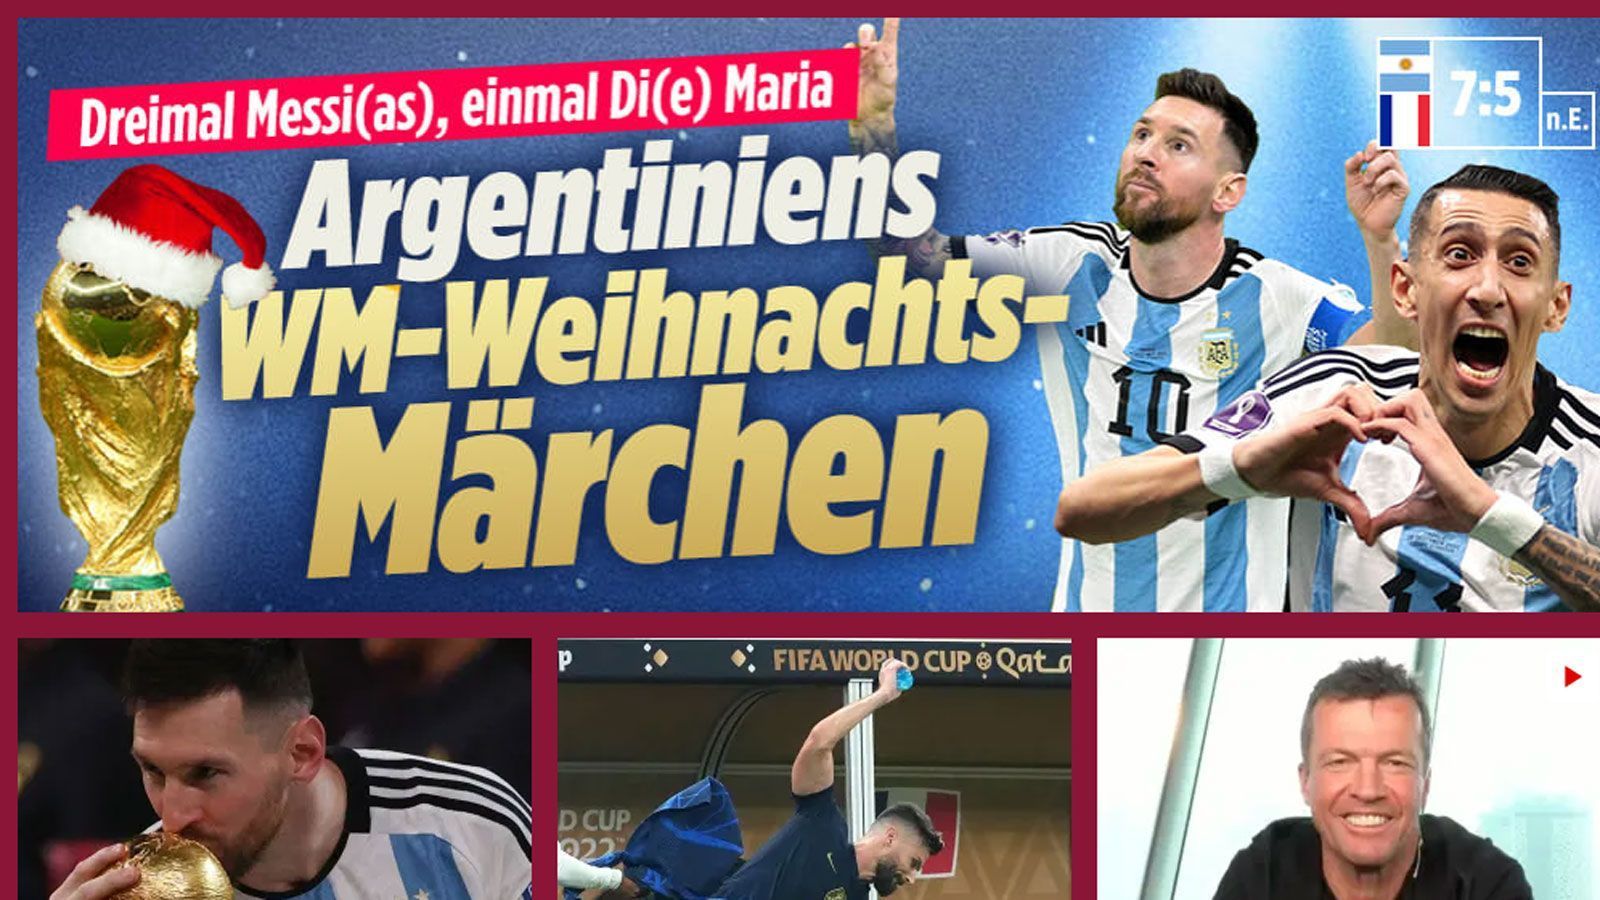 
                <strong>Bild</strong><br>
                "Dreimal Messi(as), einmal Di(e) Maria - Argentiniens WM-Weihnachts-Märchen"
              